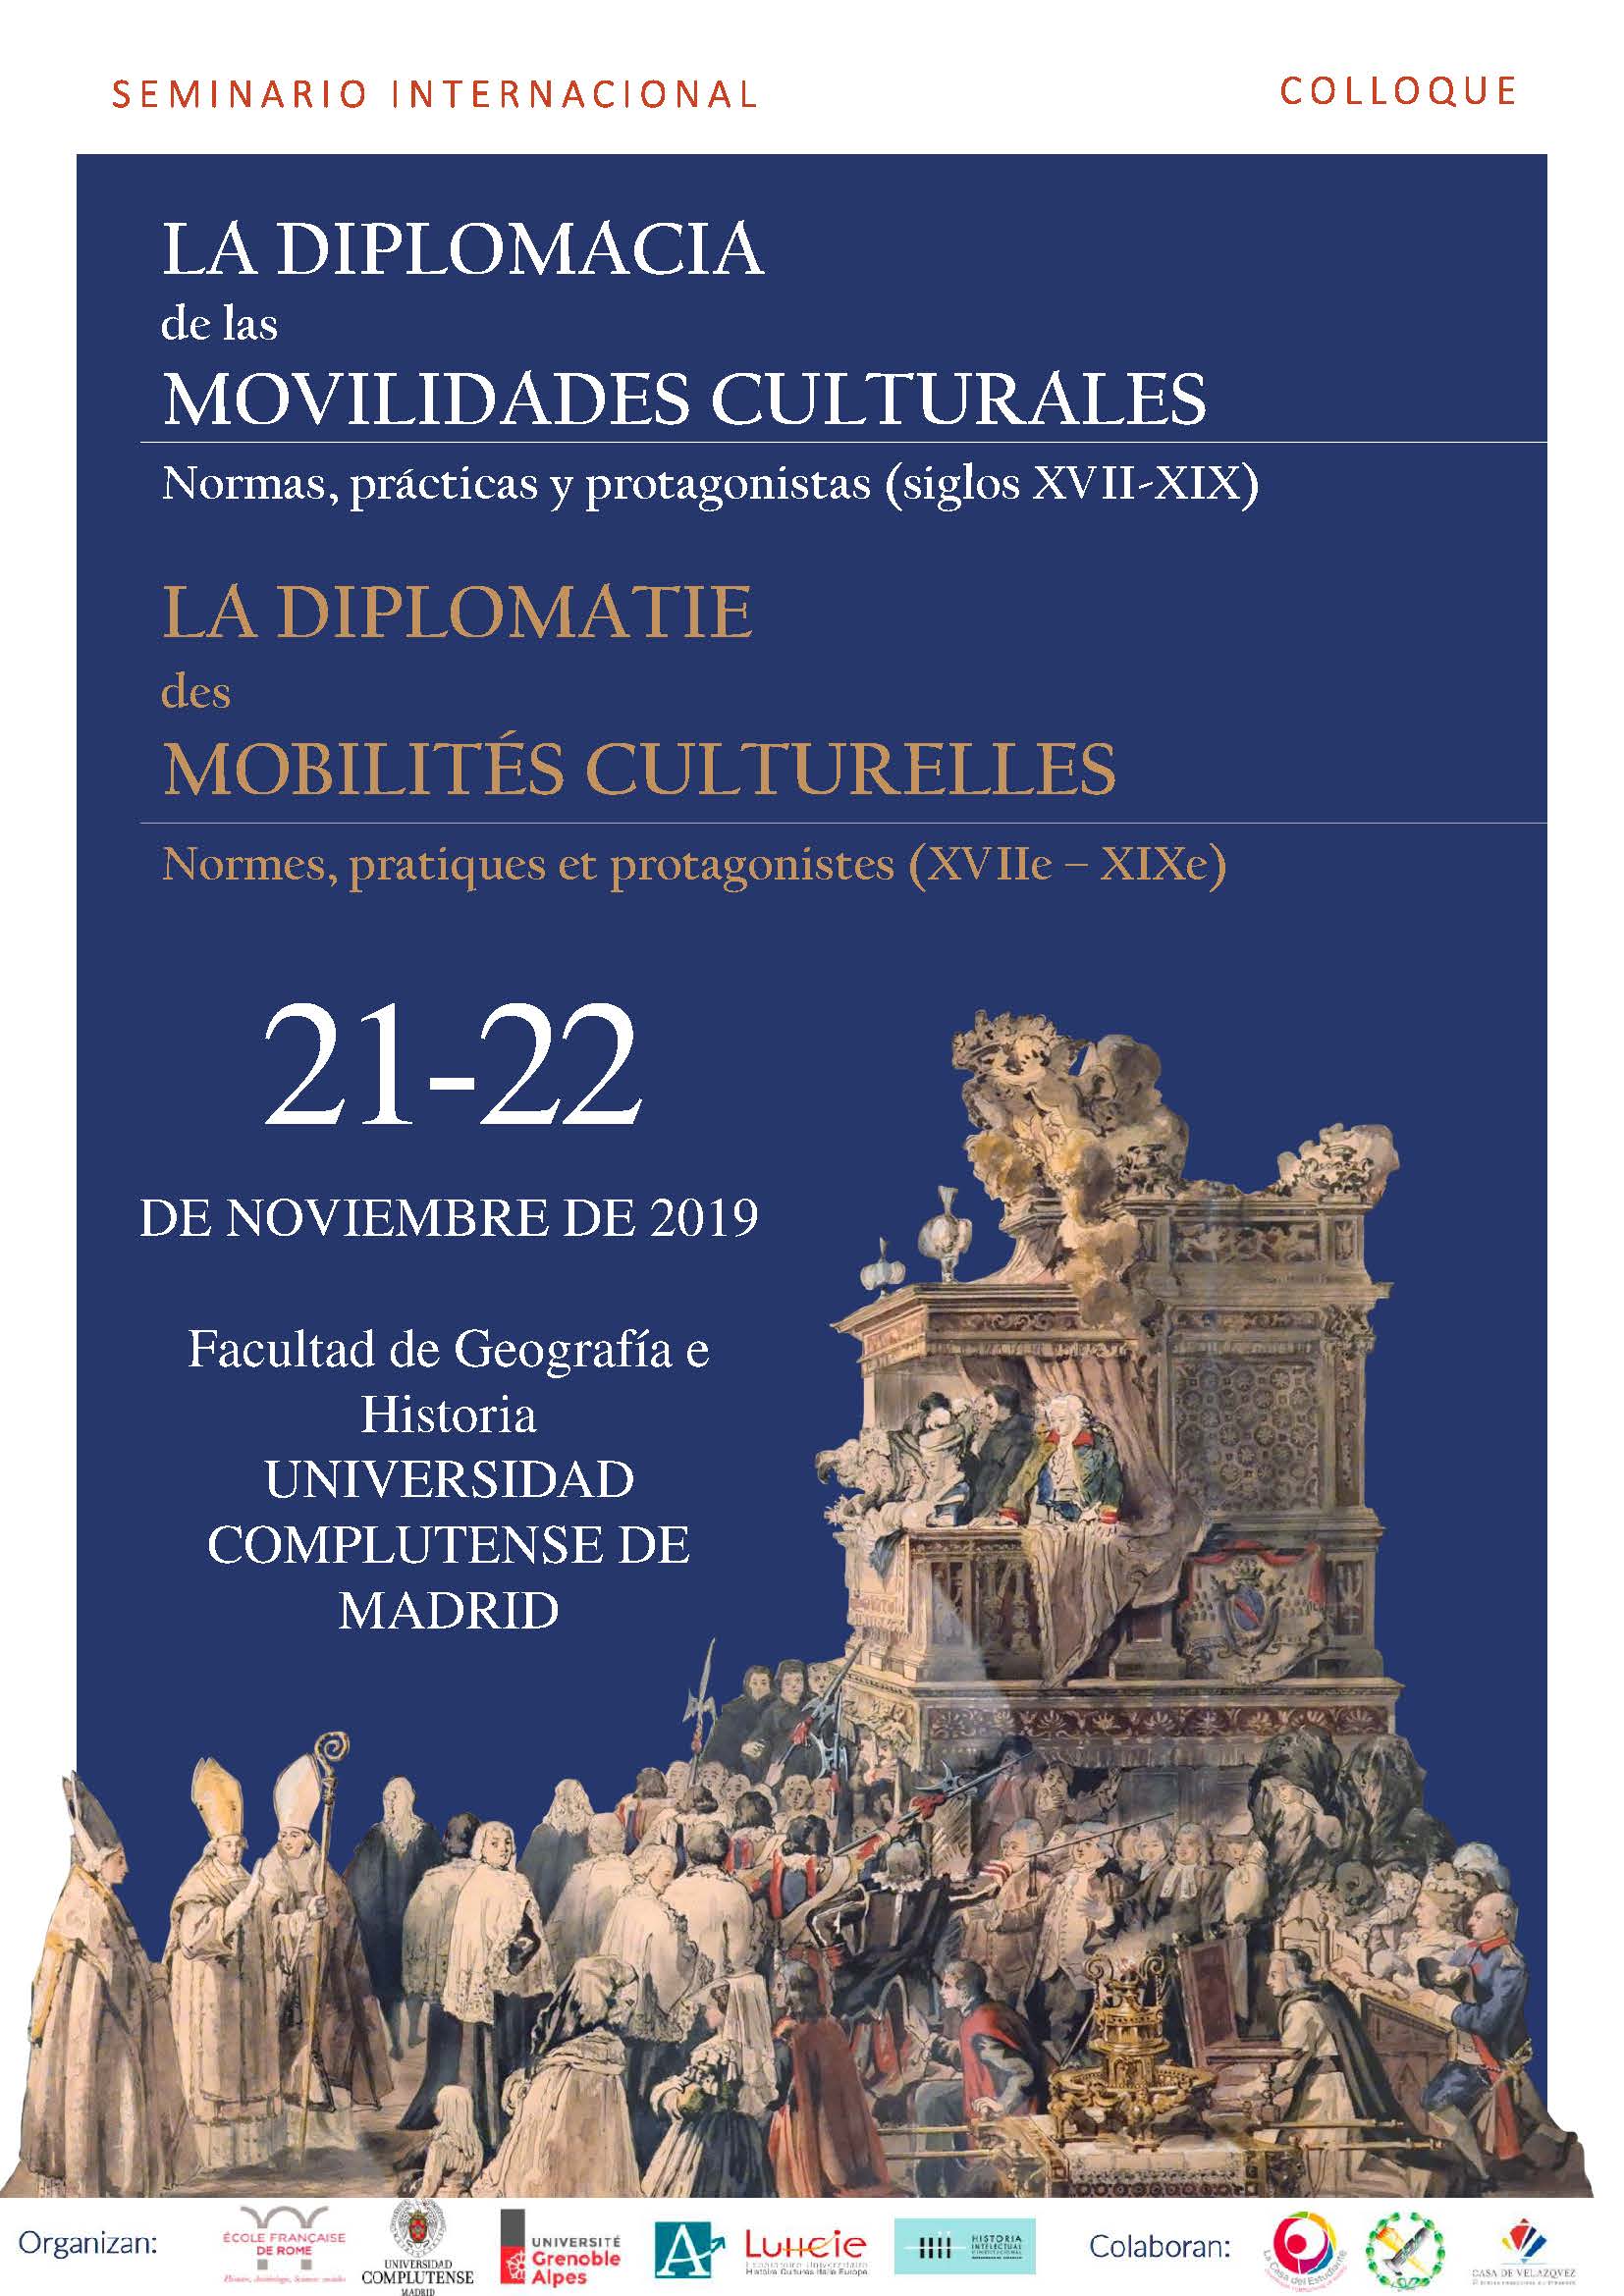 La diplomacia de las movilidades culturales, 21-22 de noviembre, Facultad de Geografía e Historia